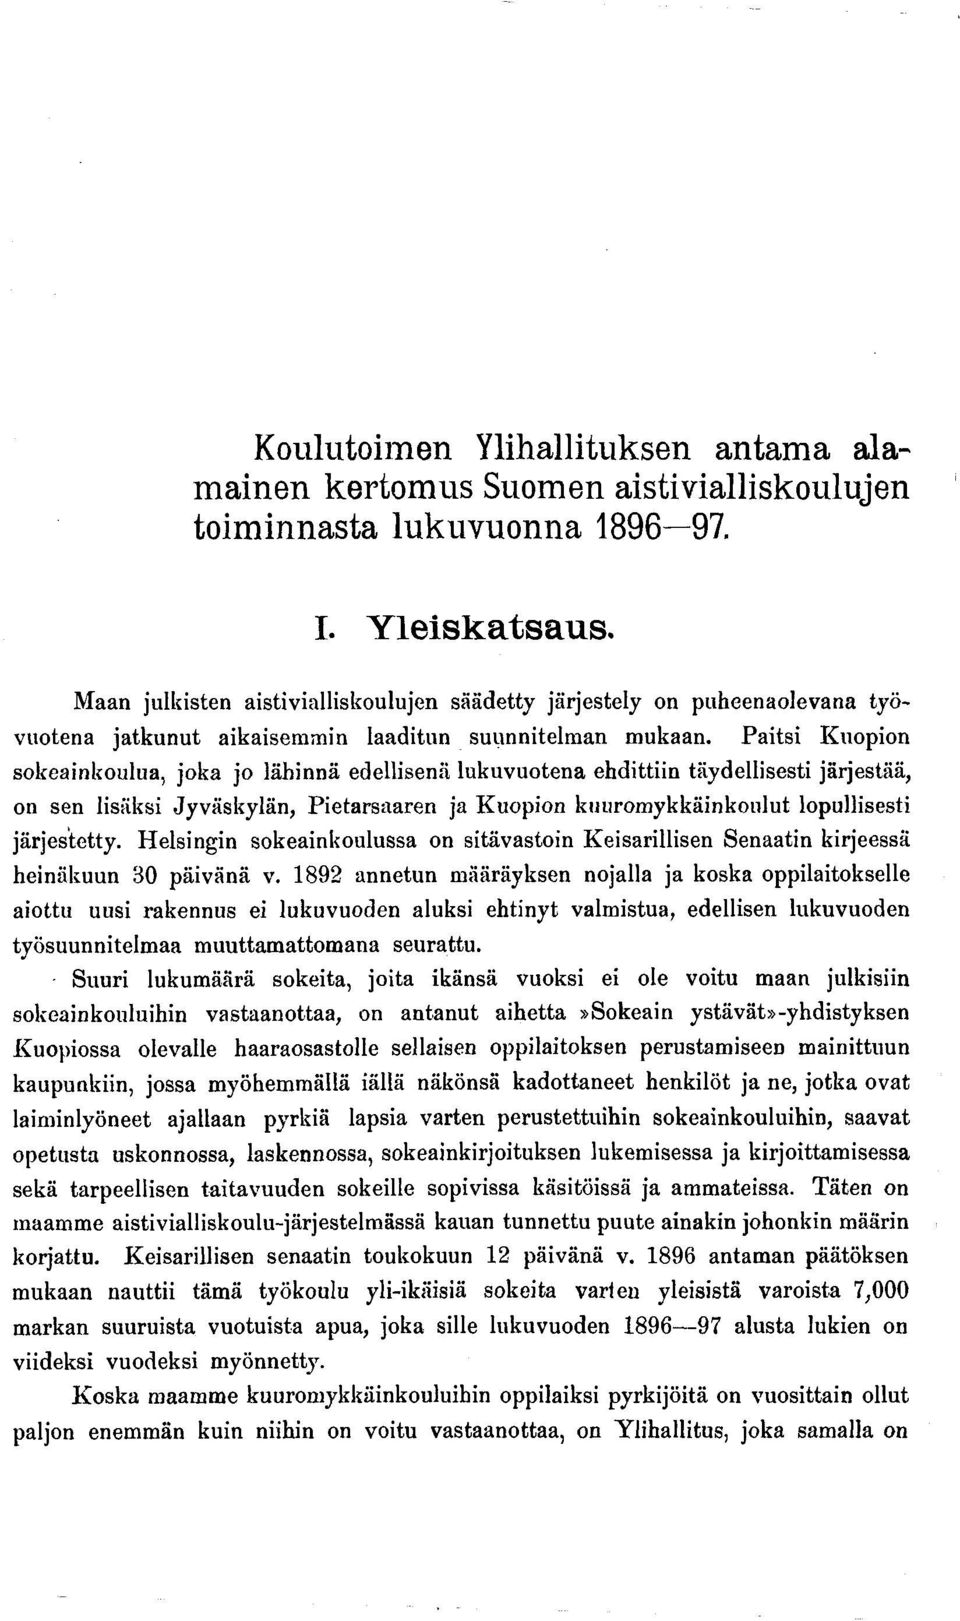 Paitsi Kuopion sokeainkoulua, joka jo lähinnä edellisenä lukuvuotena ehdittiin täydellisesti järjestää, on sen lisäksi Jyväskylän, Pietarsaaren ja Kuopion kuuromykkäinkonlut lopullisesti järjestetty.